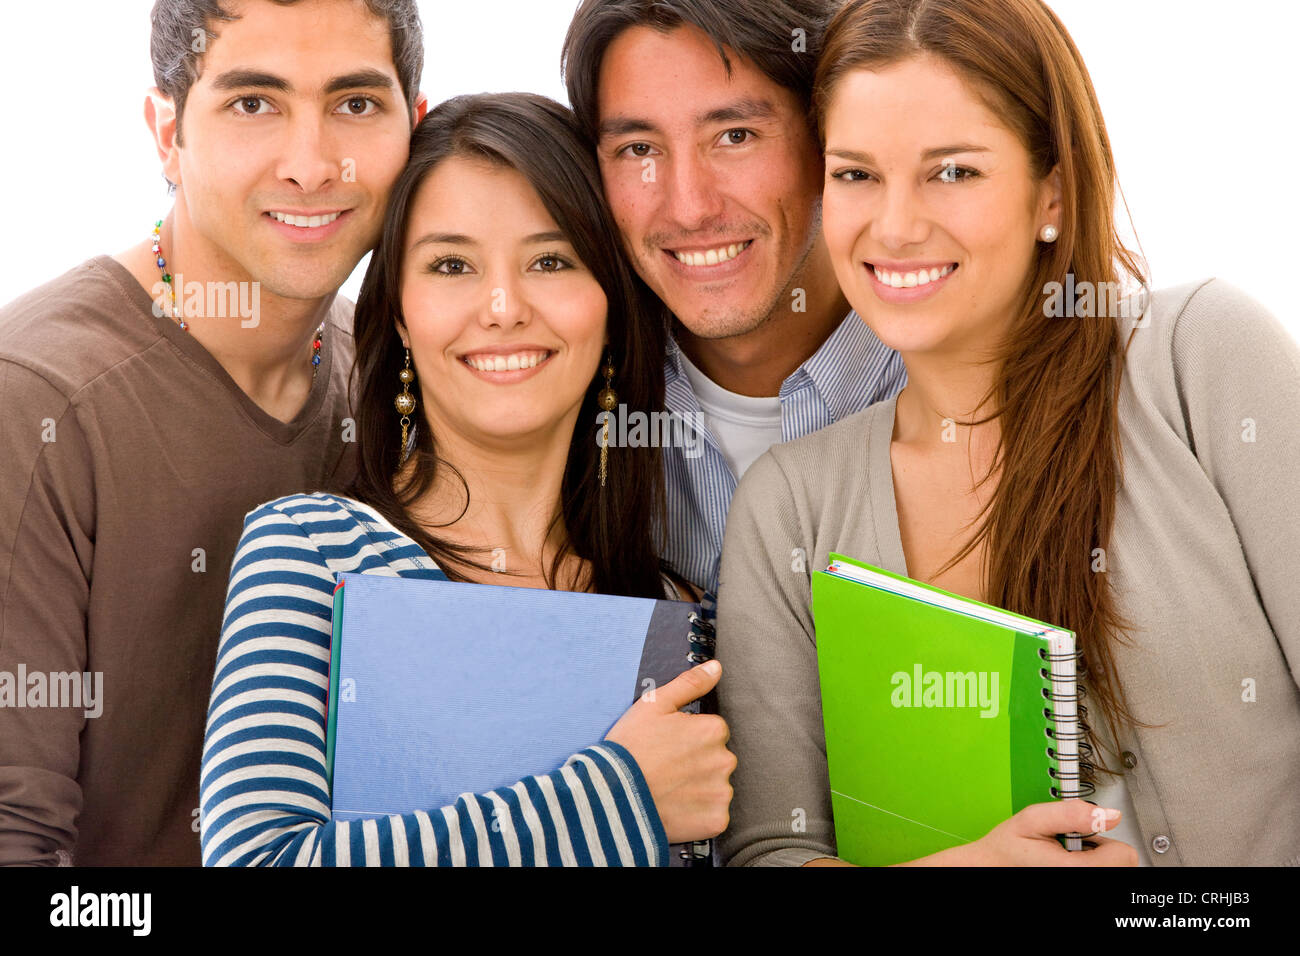 lächelnde Studentengruppe mit bunten notebooks Stockfoto